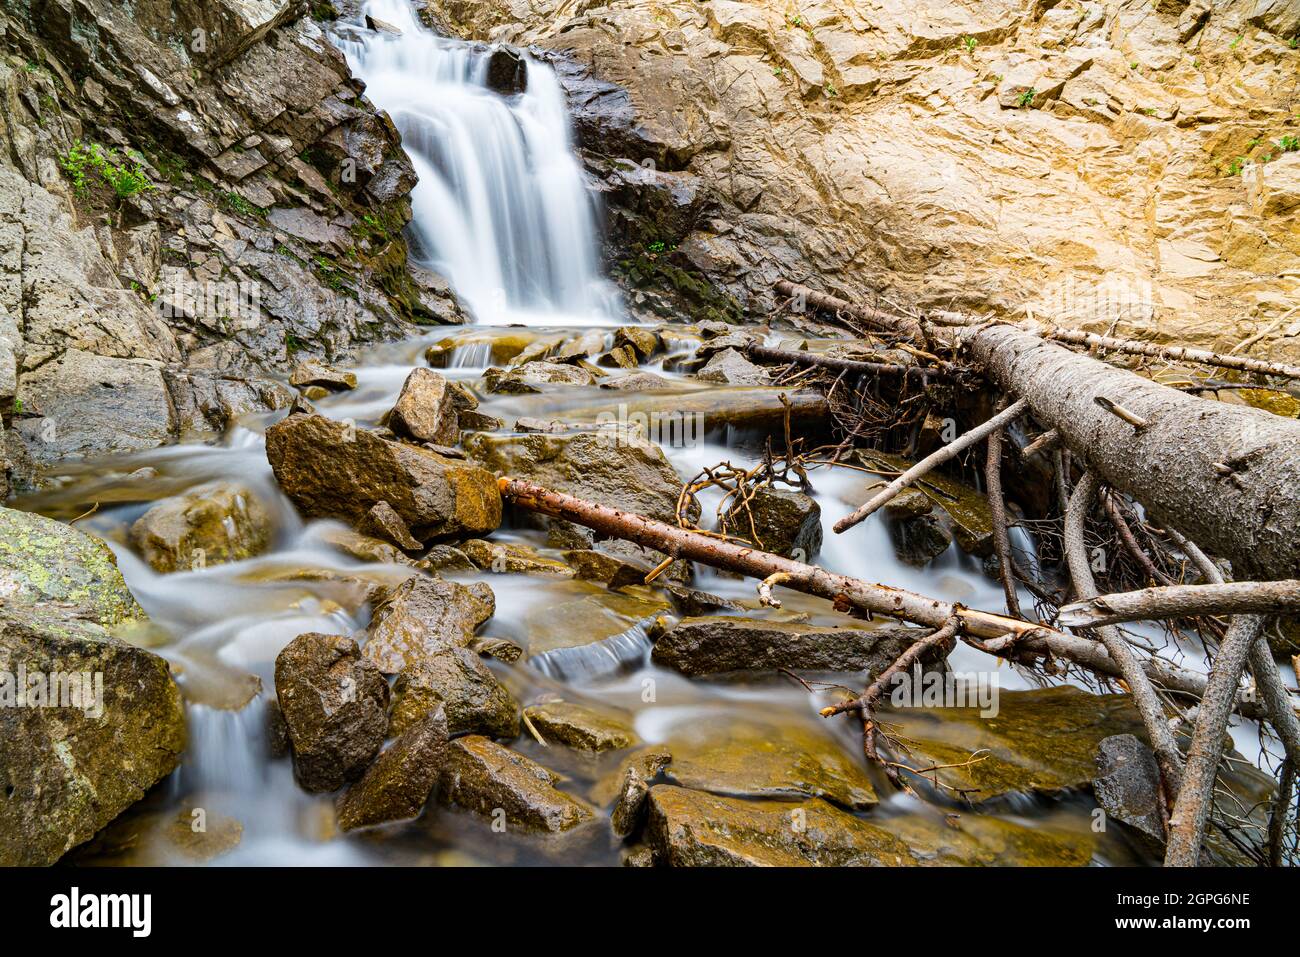 Larga exposición de una hermosa cascada a lo largo de un alto arroyo de montaña Foto de stock